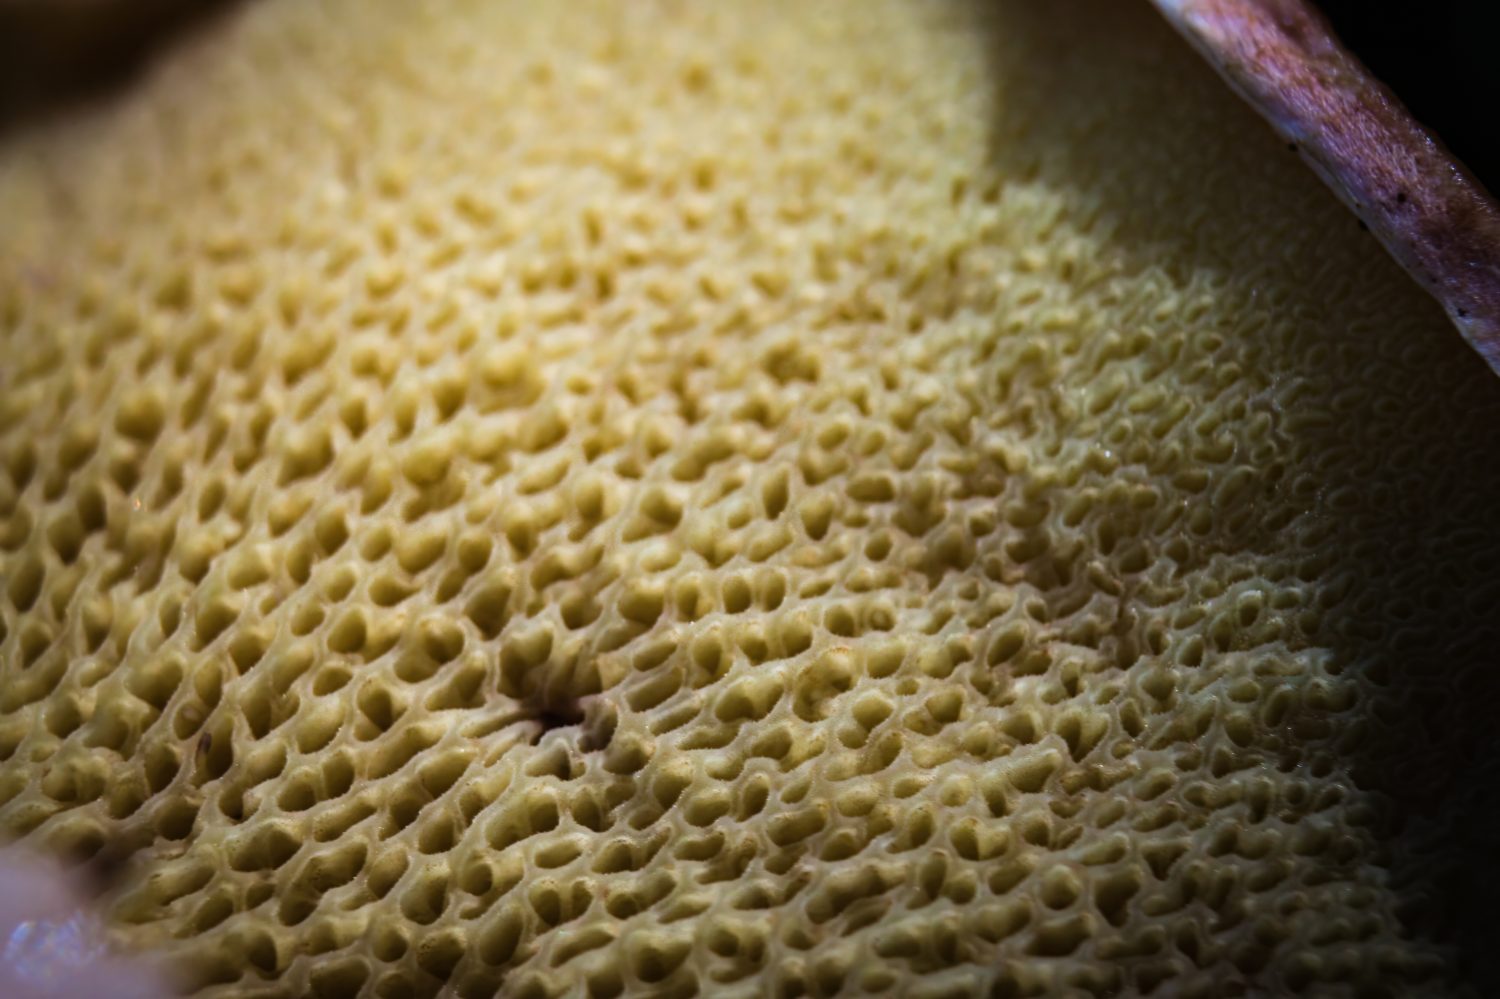 i funghi hanno pori invece di branchie.  Come le branchie, i pori producono spore, ma appaiono come piccoli fori spugnosi invece che come lame sottili. 